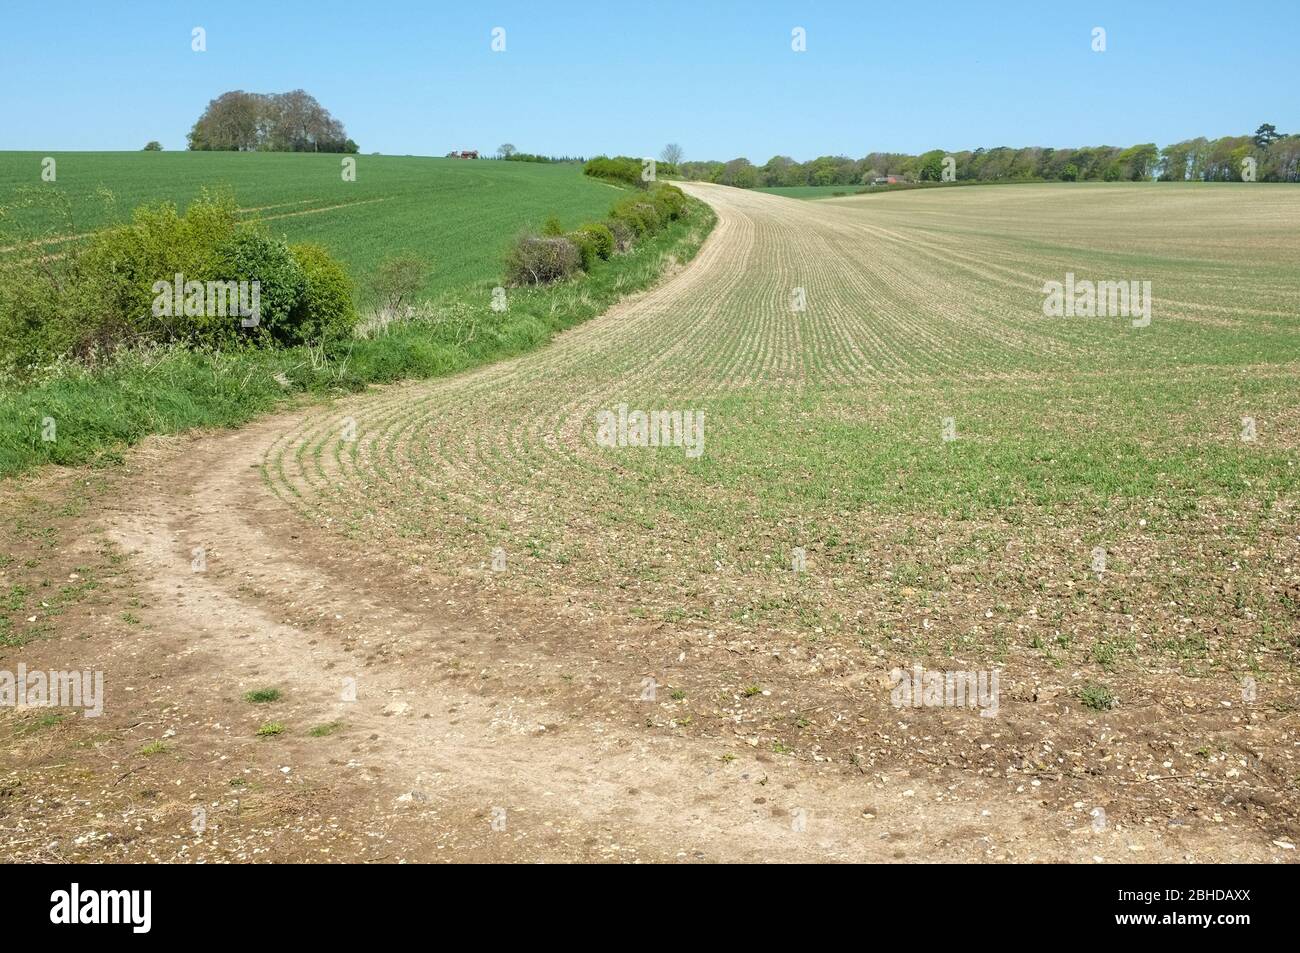 Le bord recourbé d'un champ agricole près de Grovely Wood, Wilton. Wiltshire Royaume-Uni. 2020 Banque D'Images